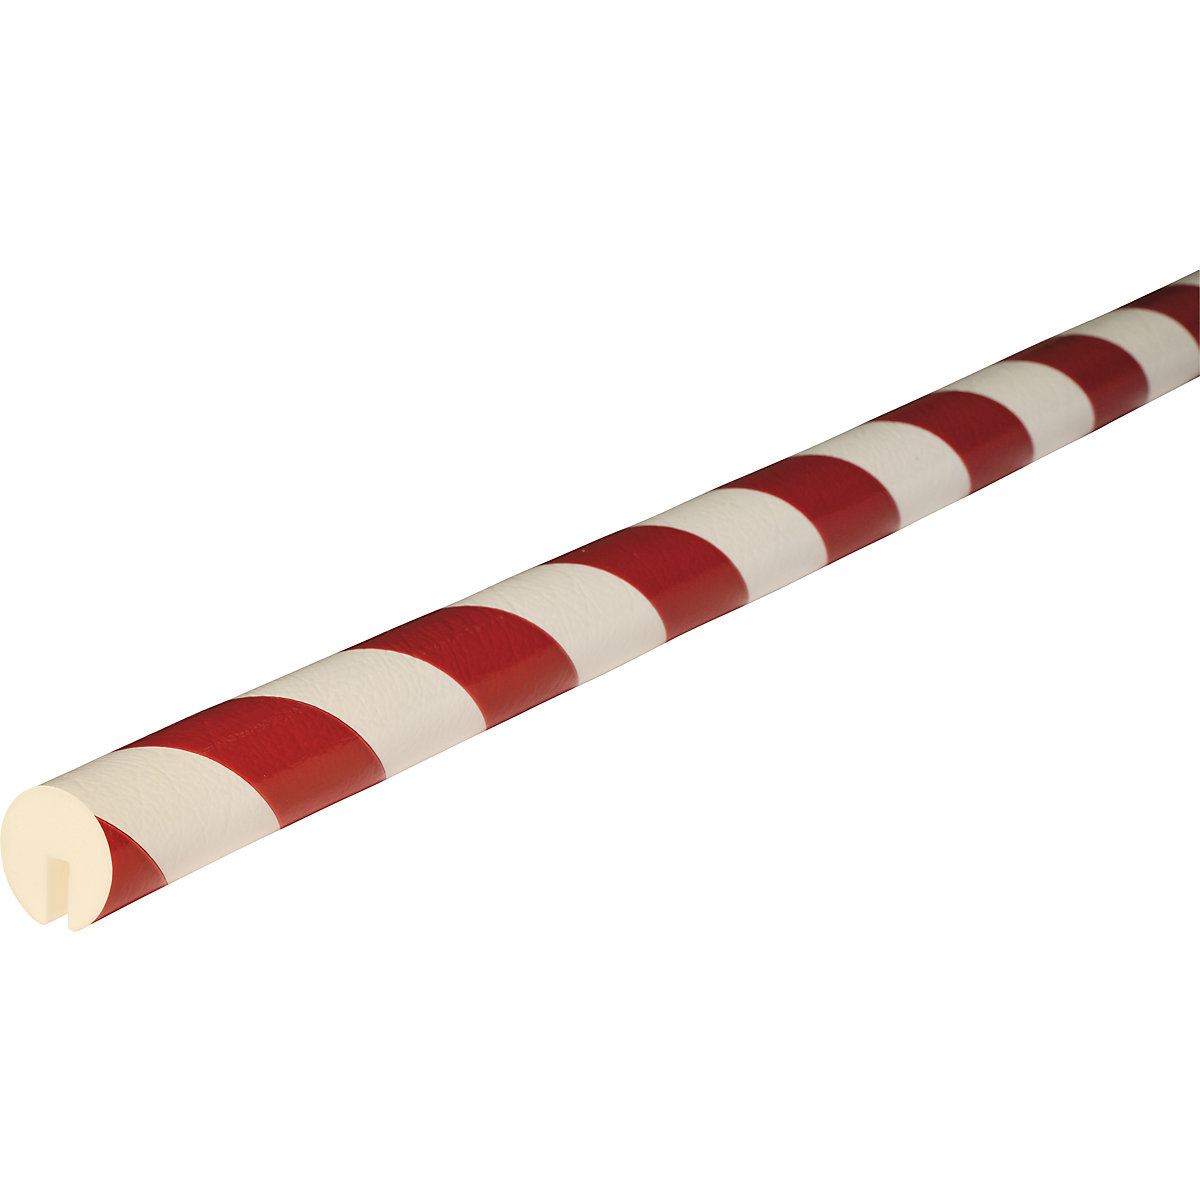 Protection des arêtes Knuffi® – SHG, type B, 1 rouleau de 5 m, rouge / blanc